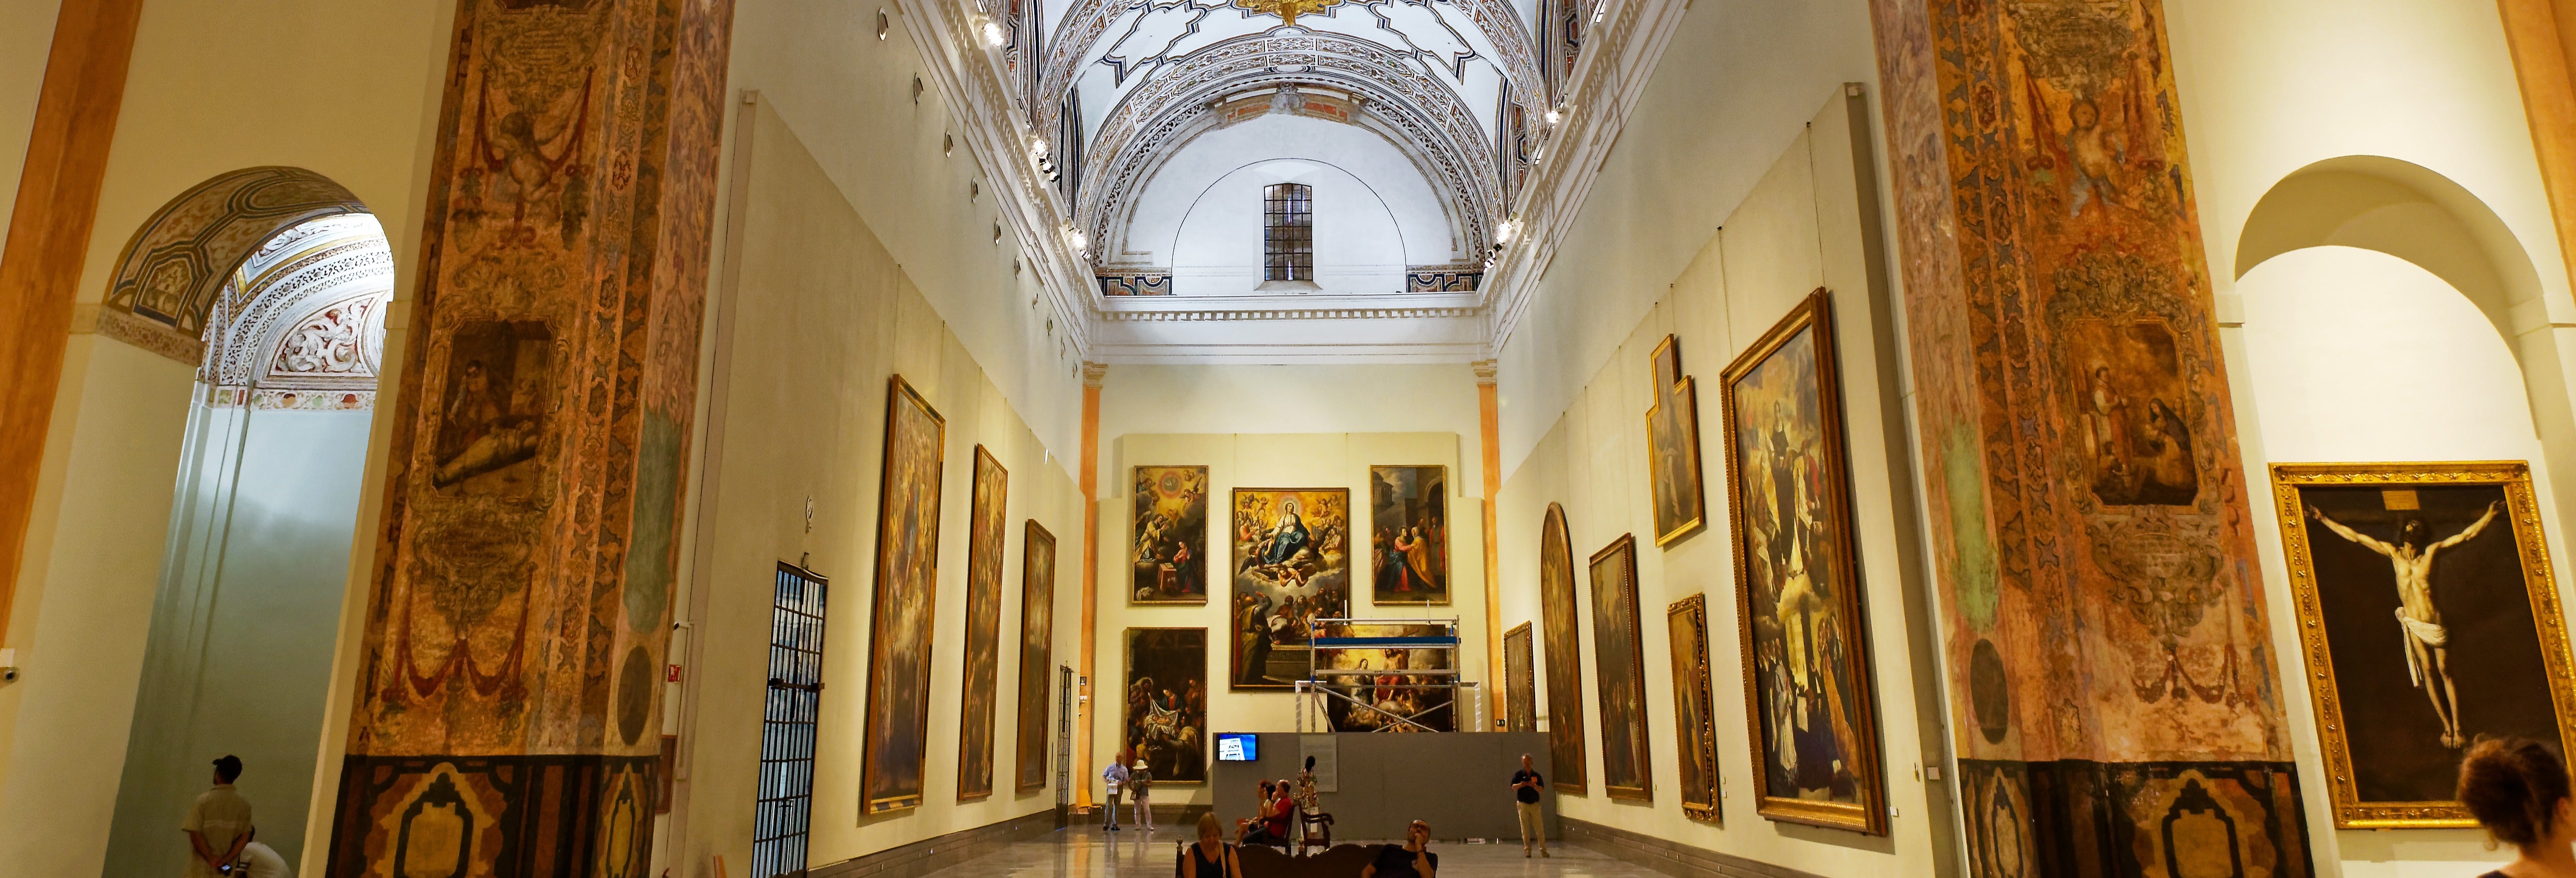 Visita guiada por el Museo de Bellas Artes